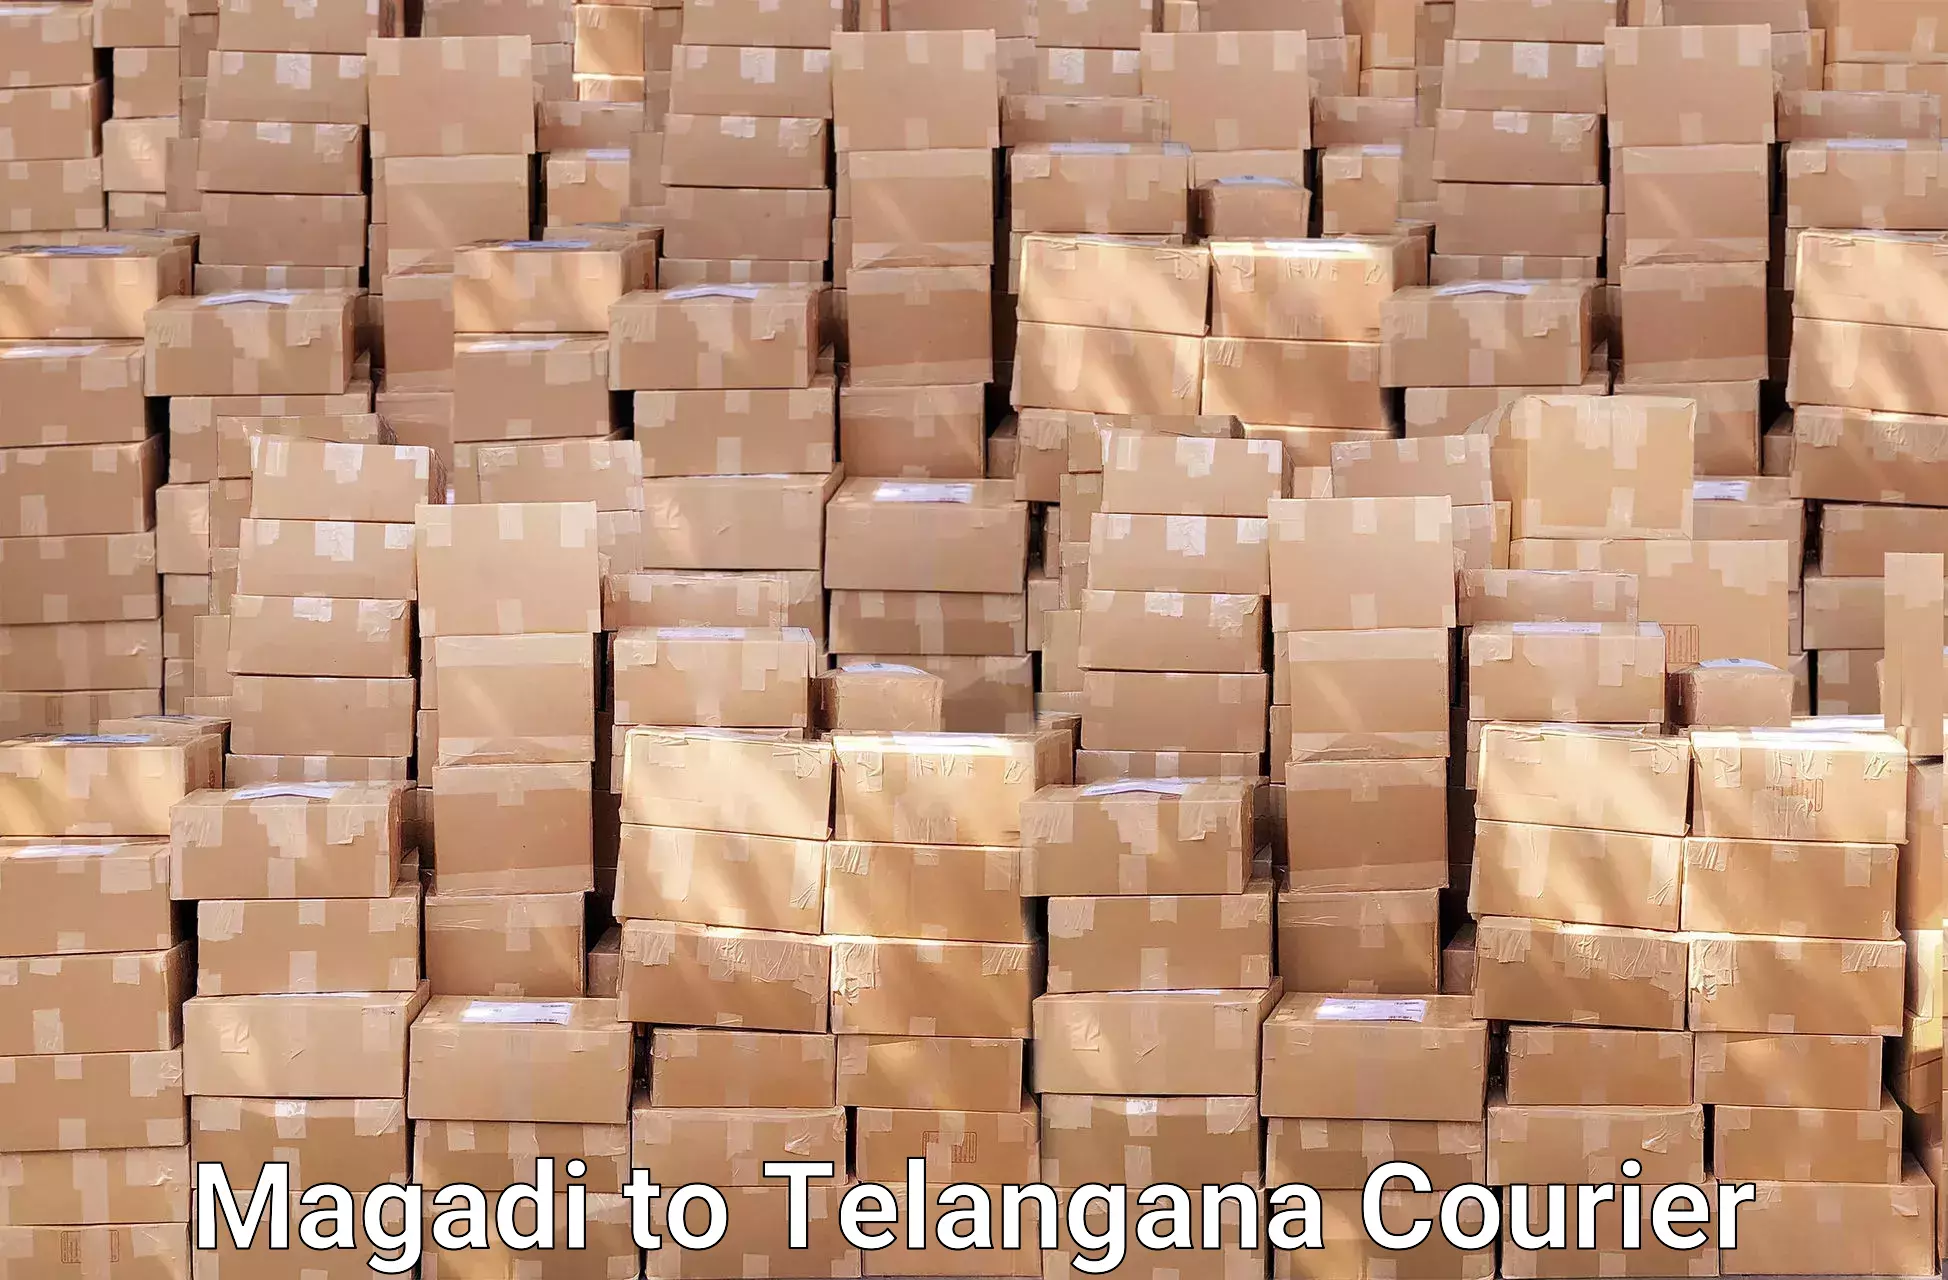 Efficient furniture transport in Magadi to Manthani